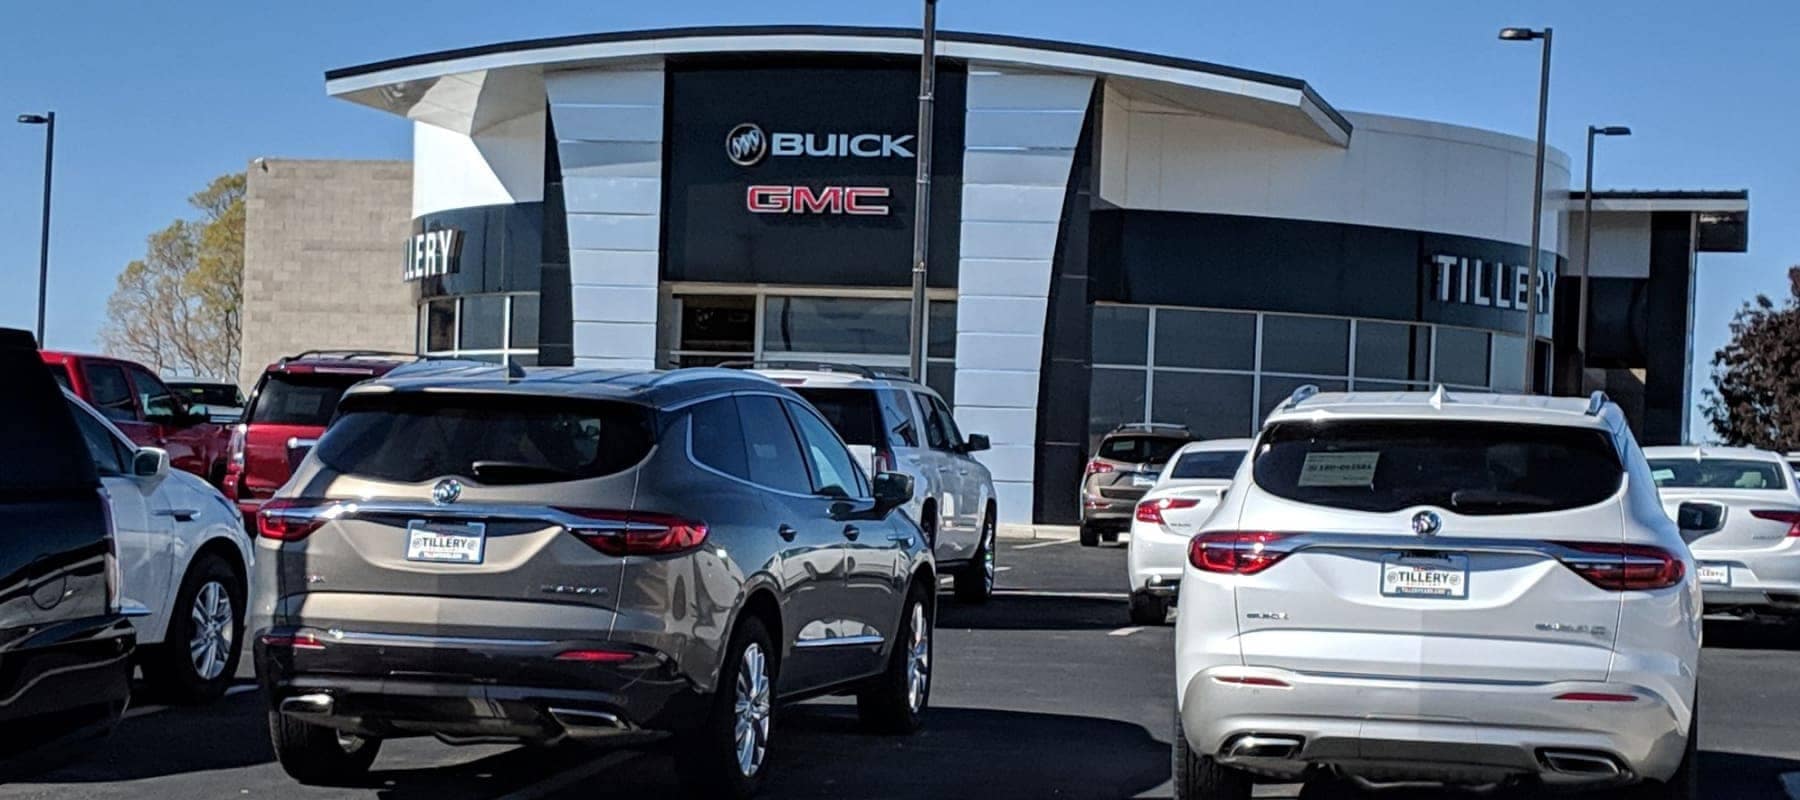 An exterior shot of a Buick GMC dealership.